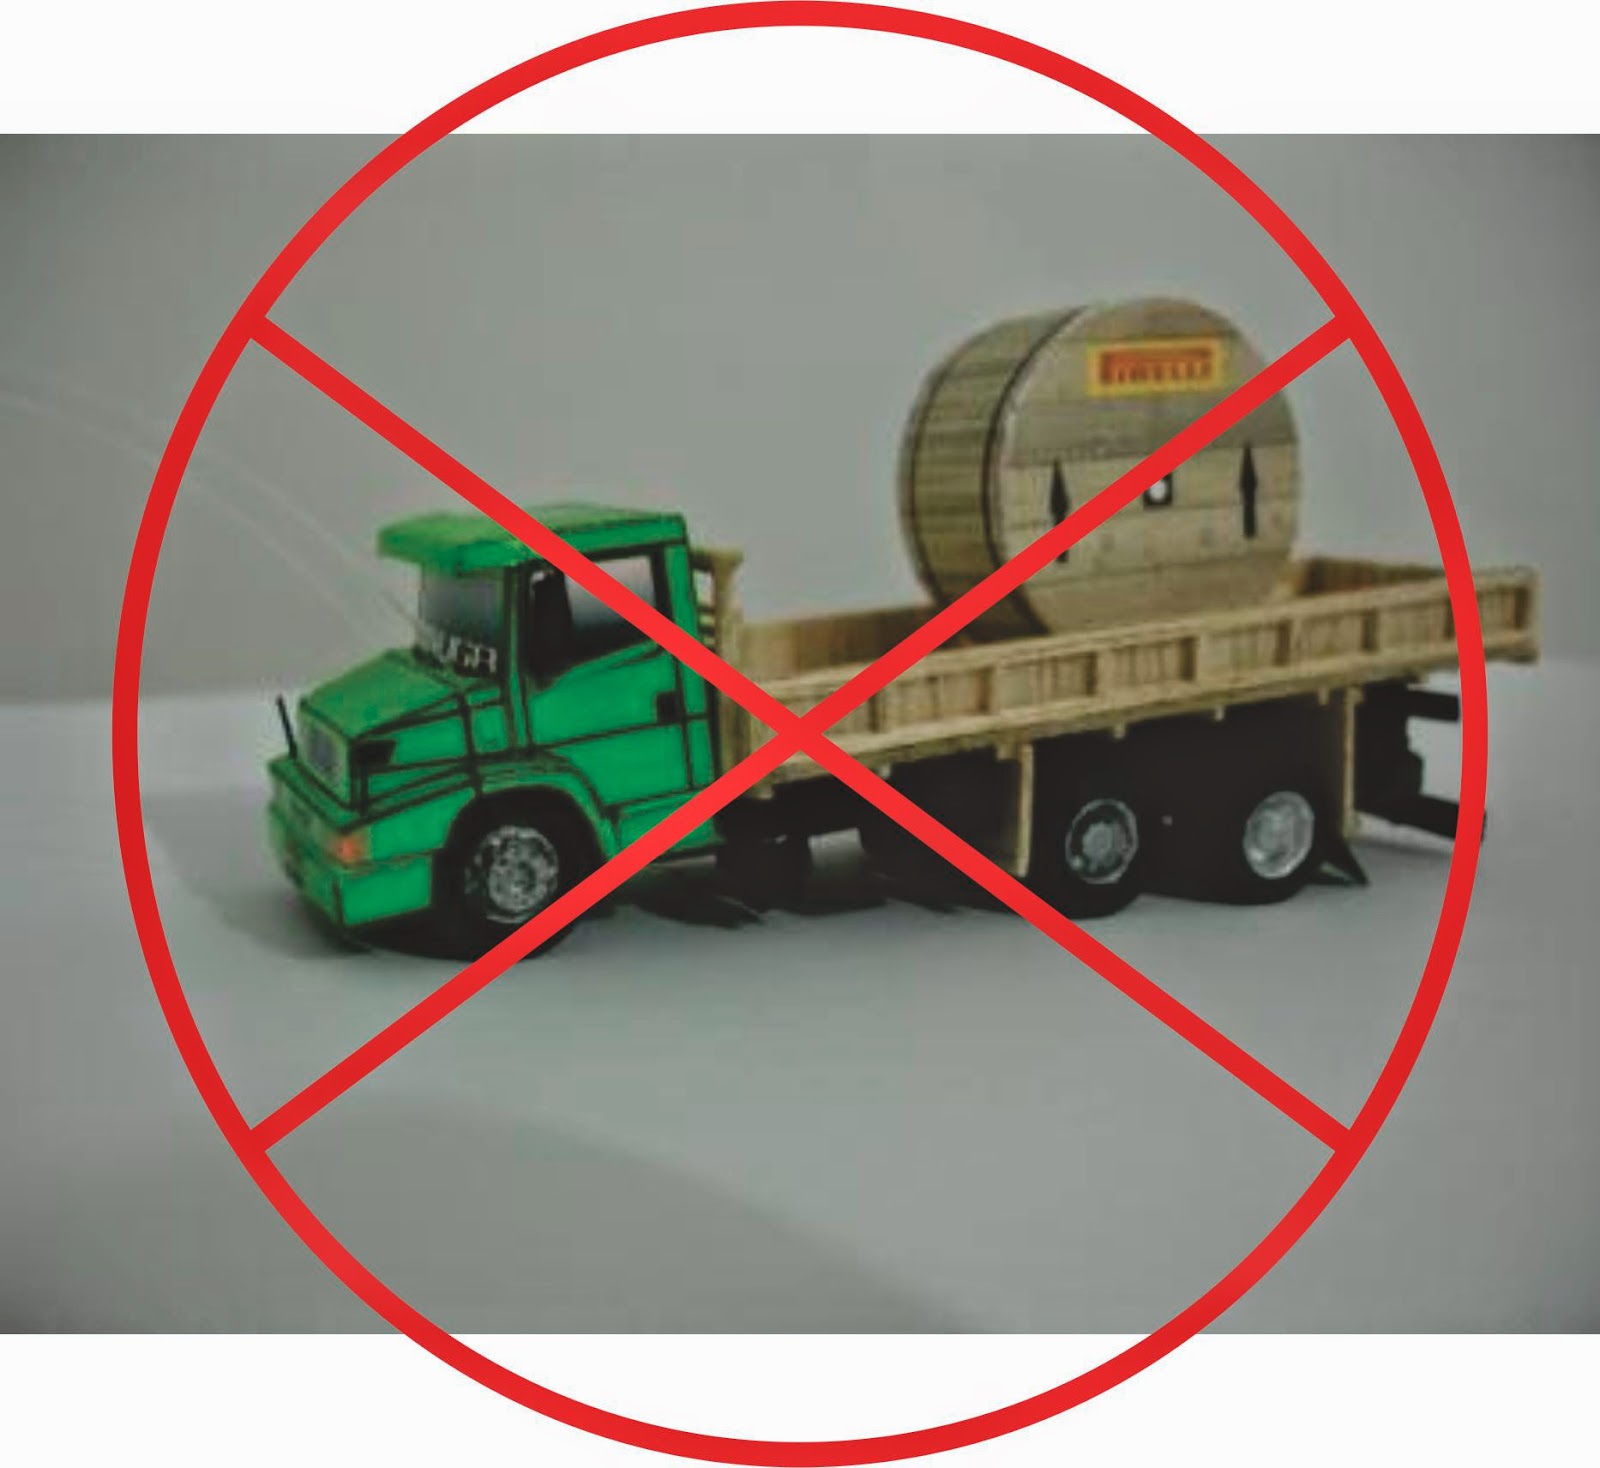 Caminhão arqueado: Os perigos da modificação de estrutura dos